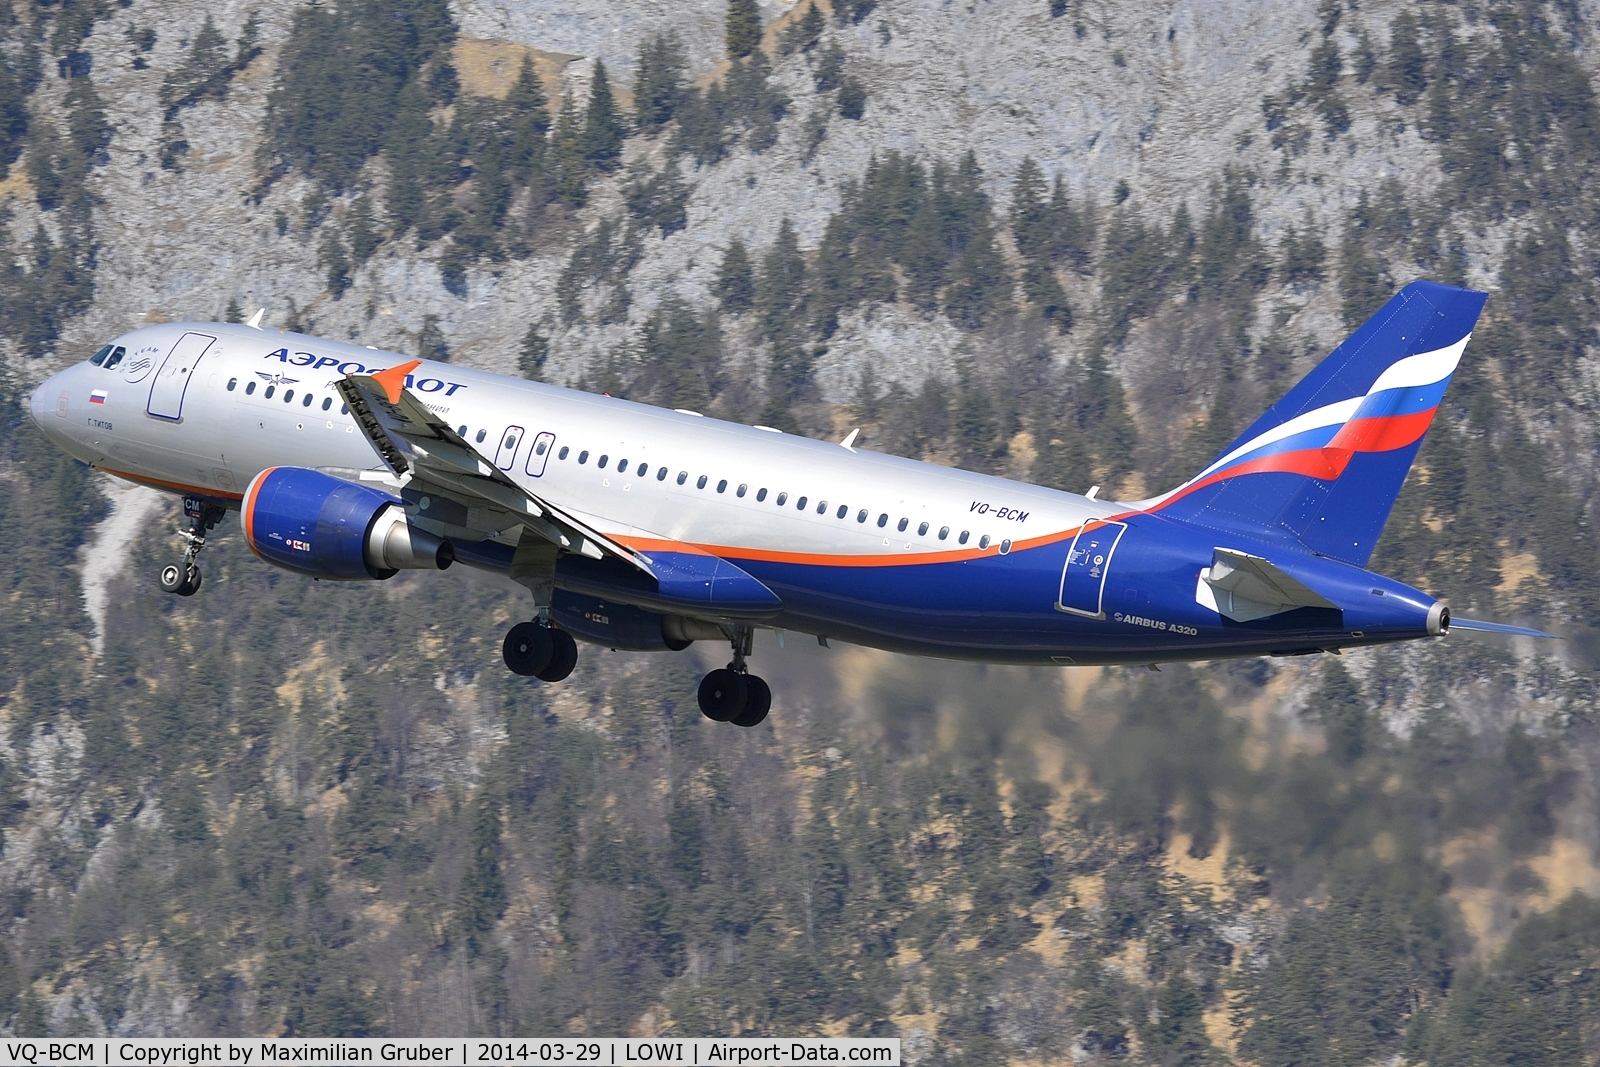 VQ-BCM, 2009 Airbus A320-214 C/N 3923, Aeroflot